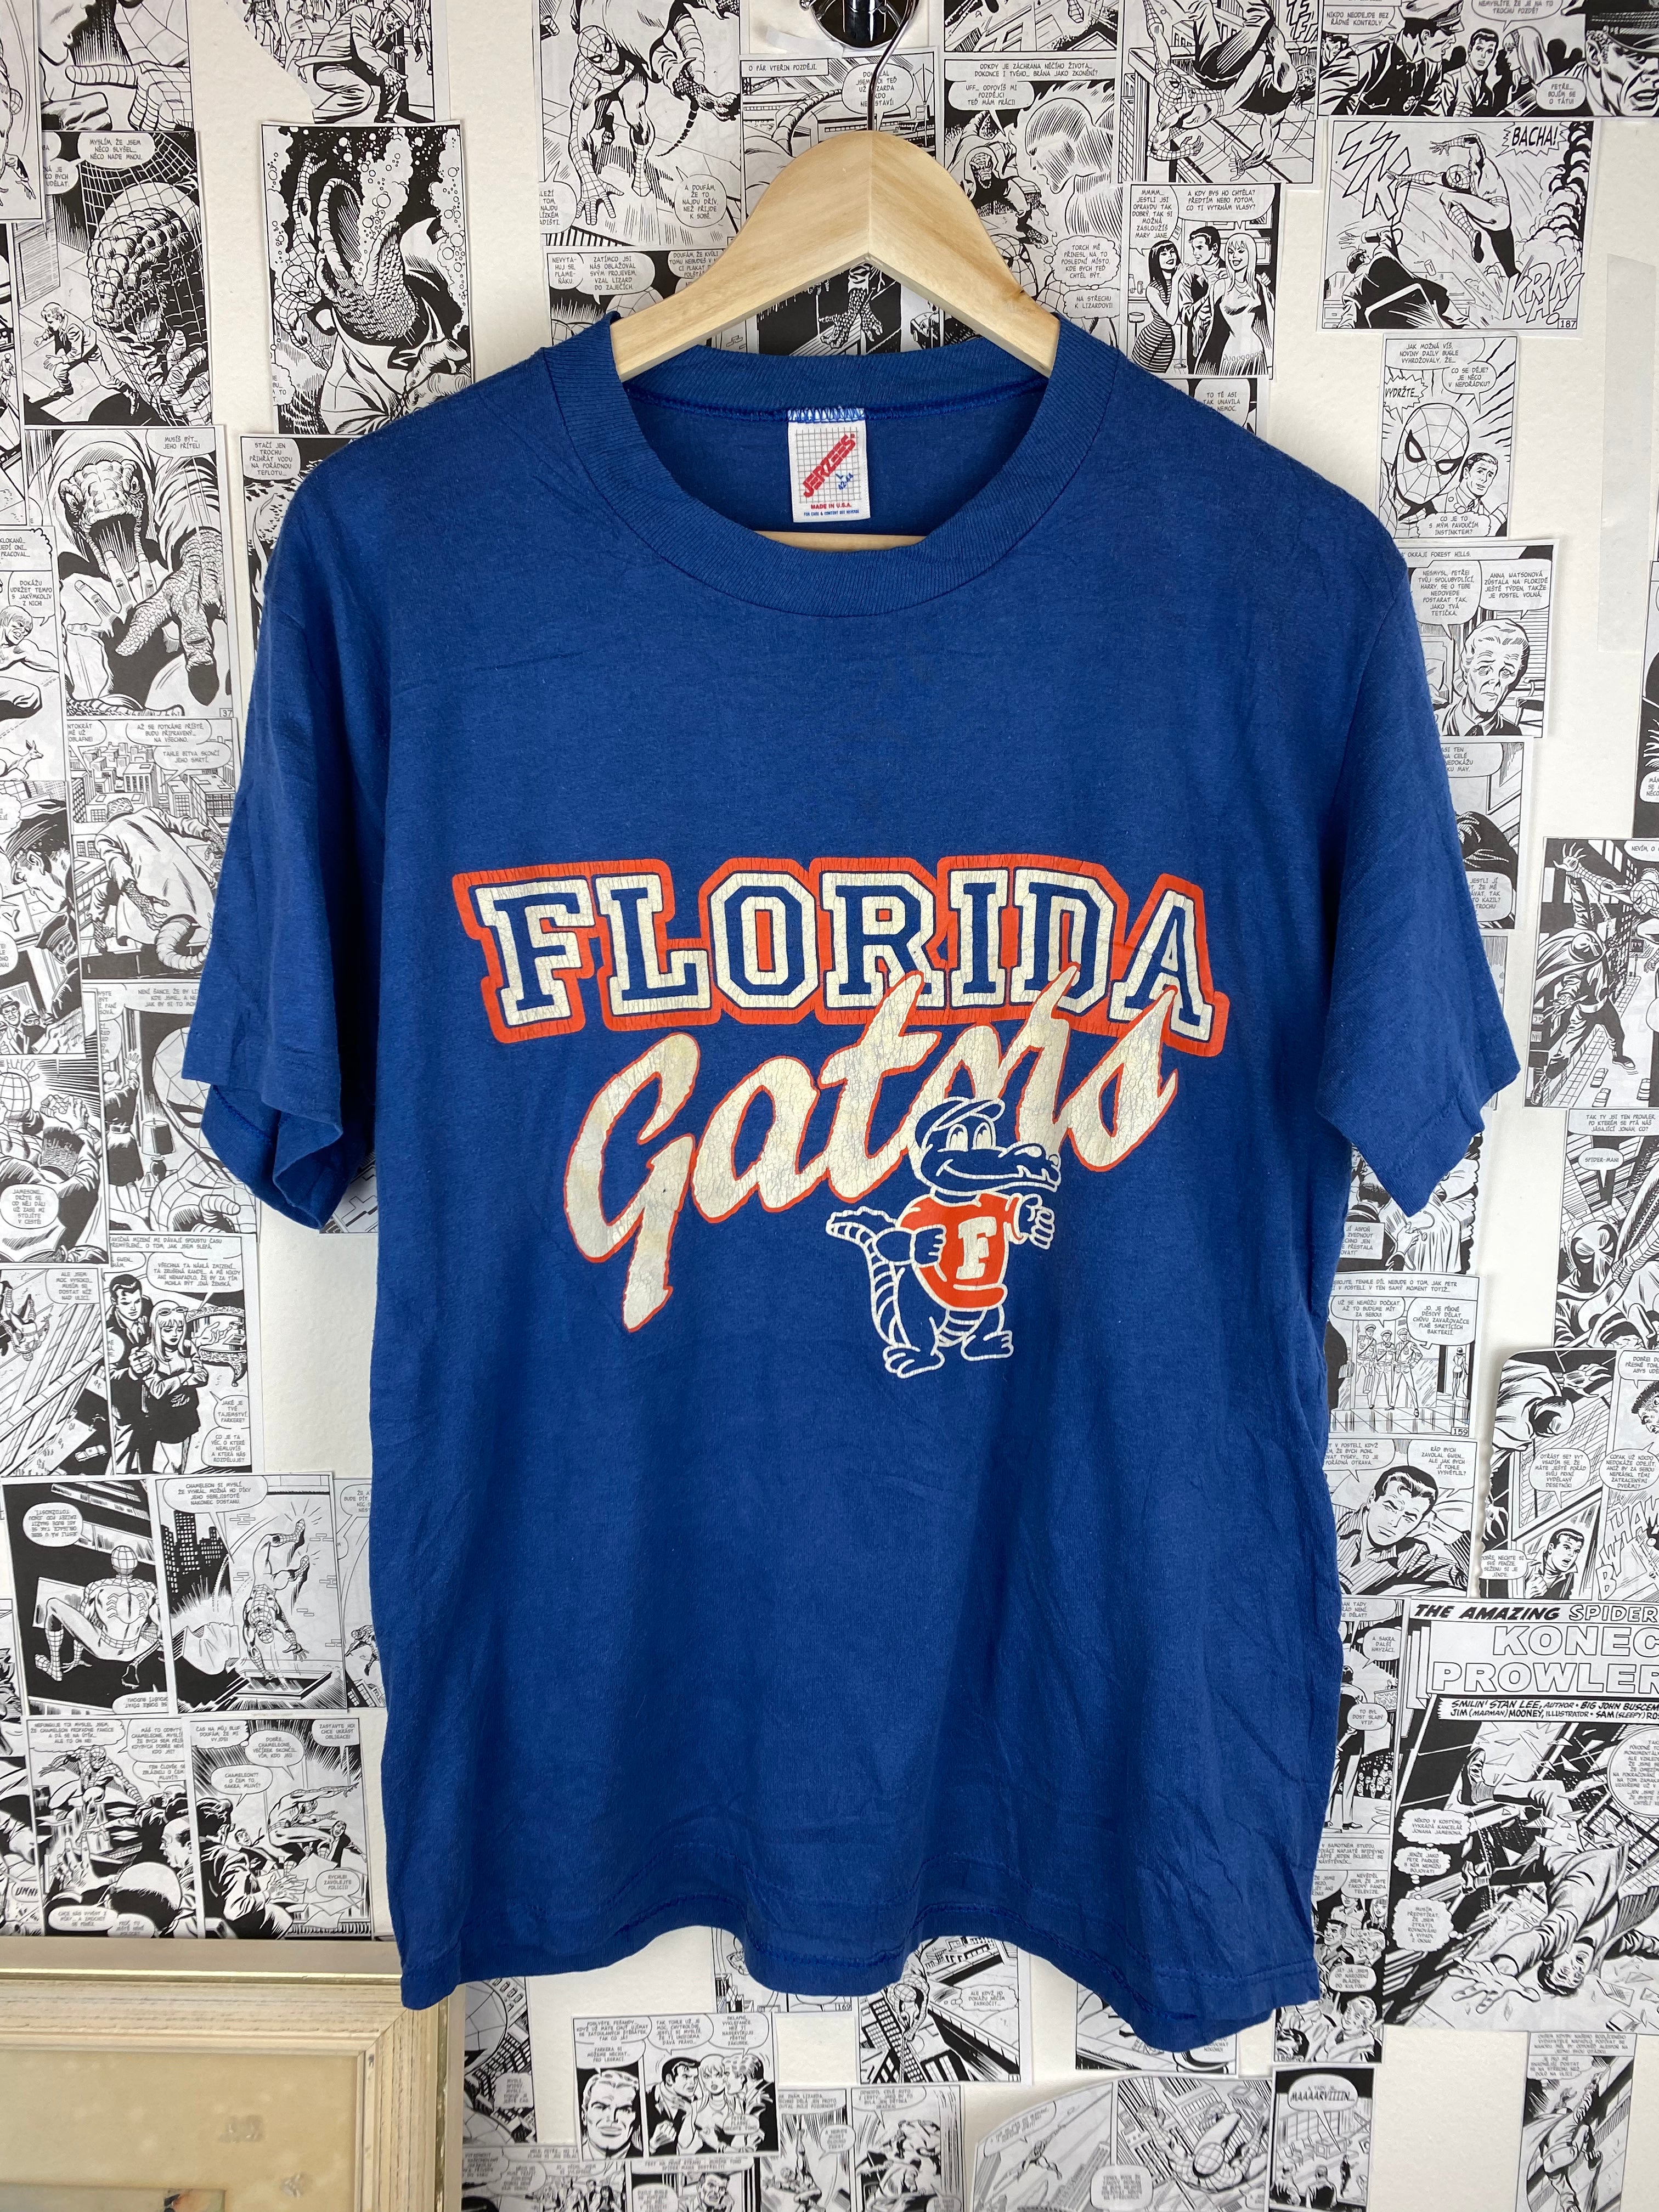 Vintage Florida Gators 90s t-shirt - size L